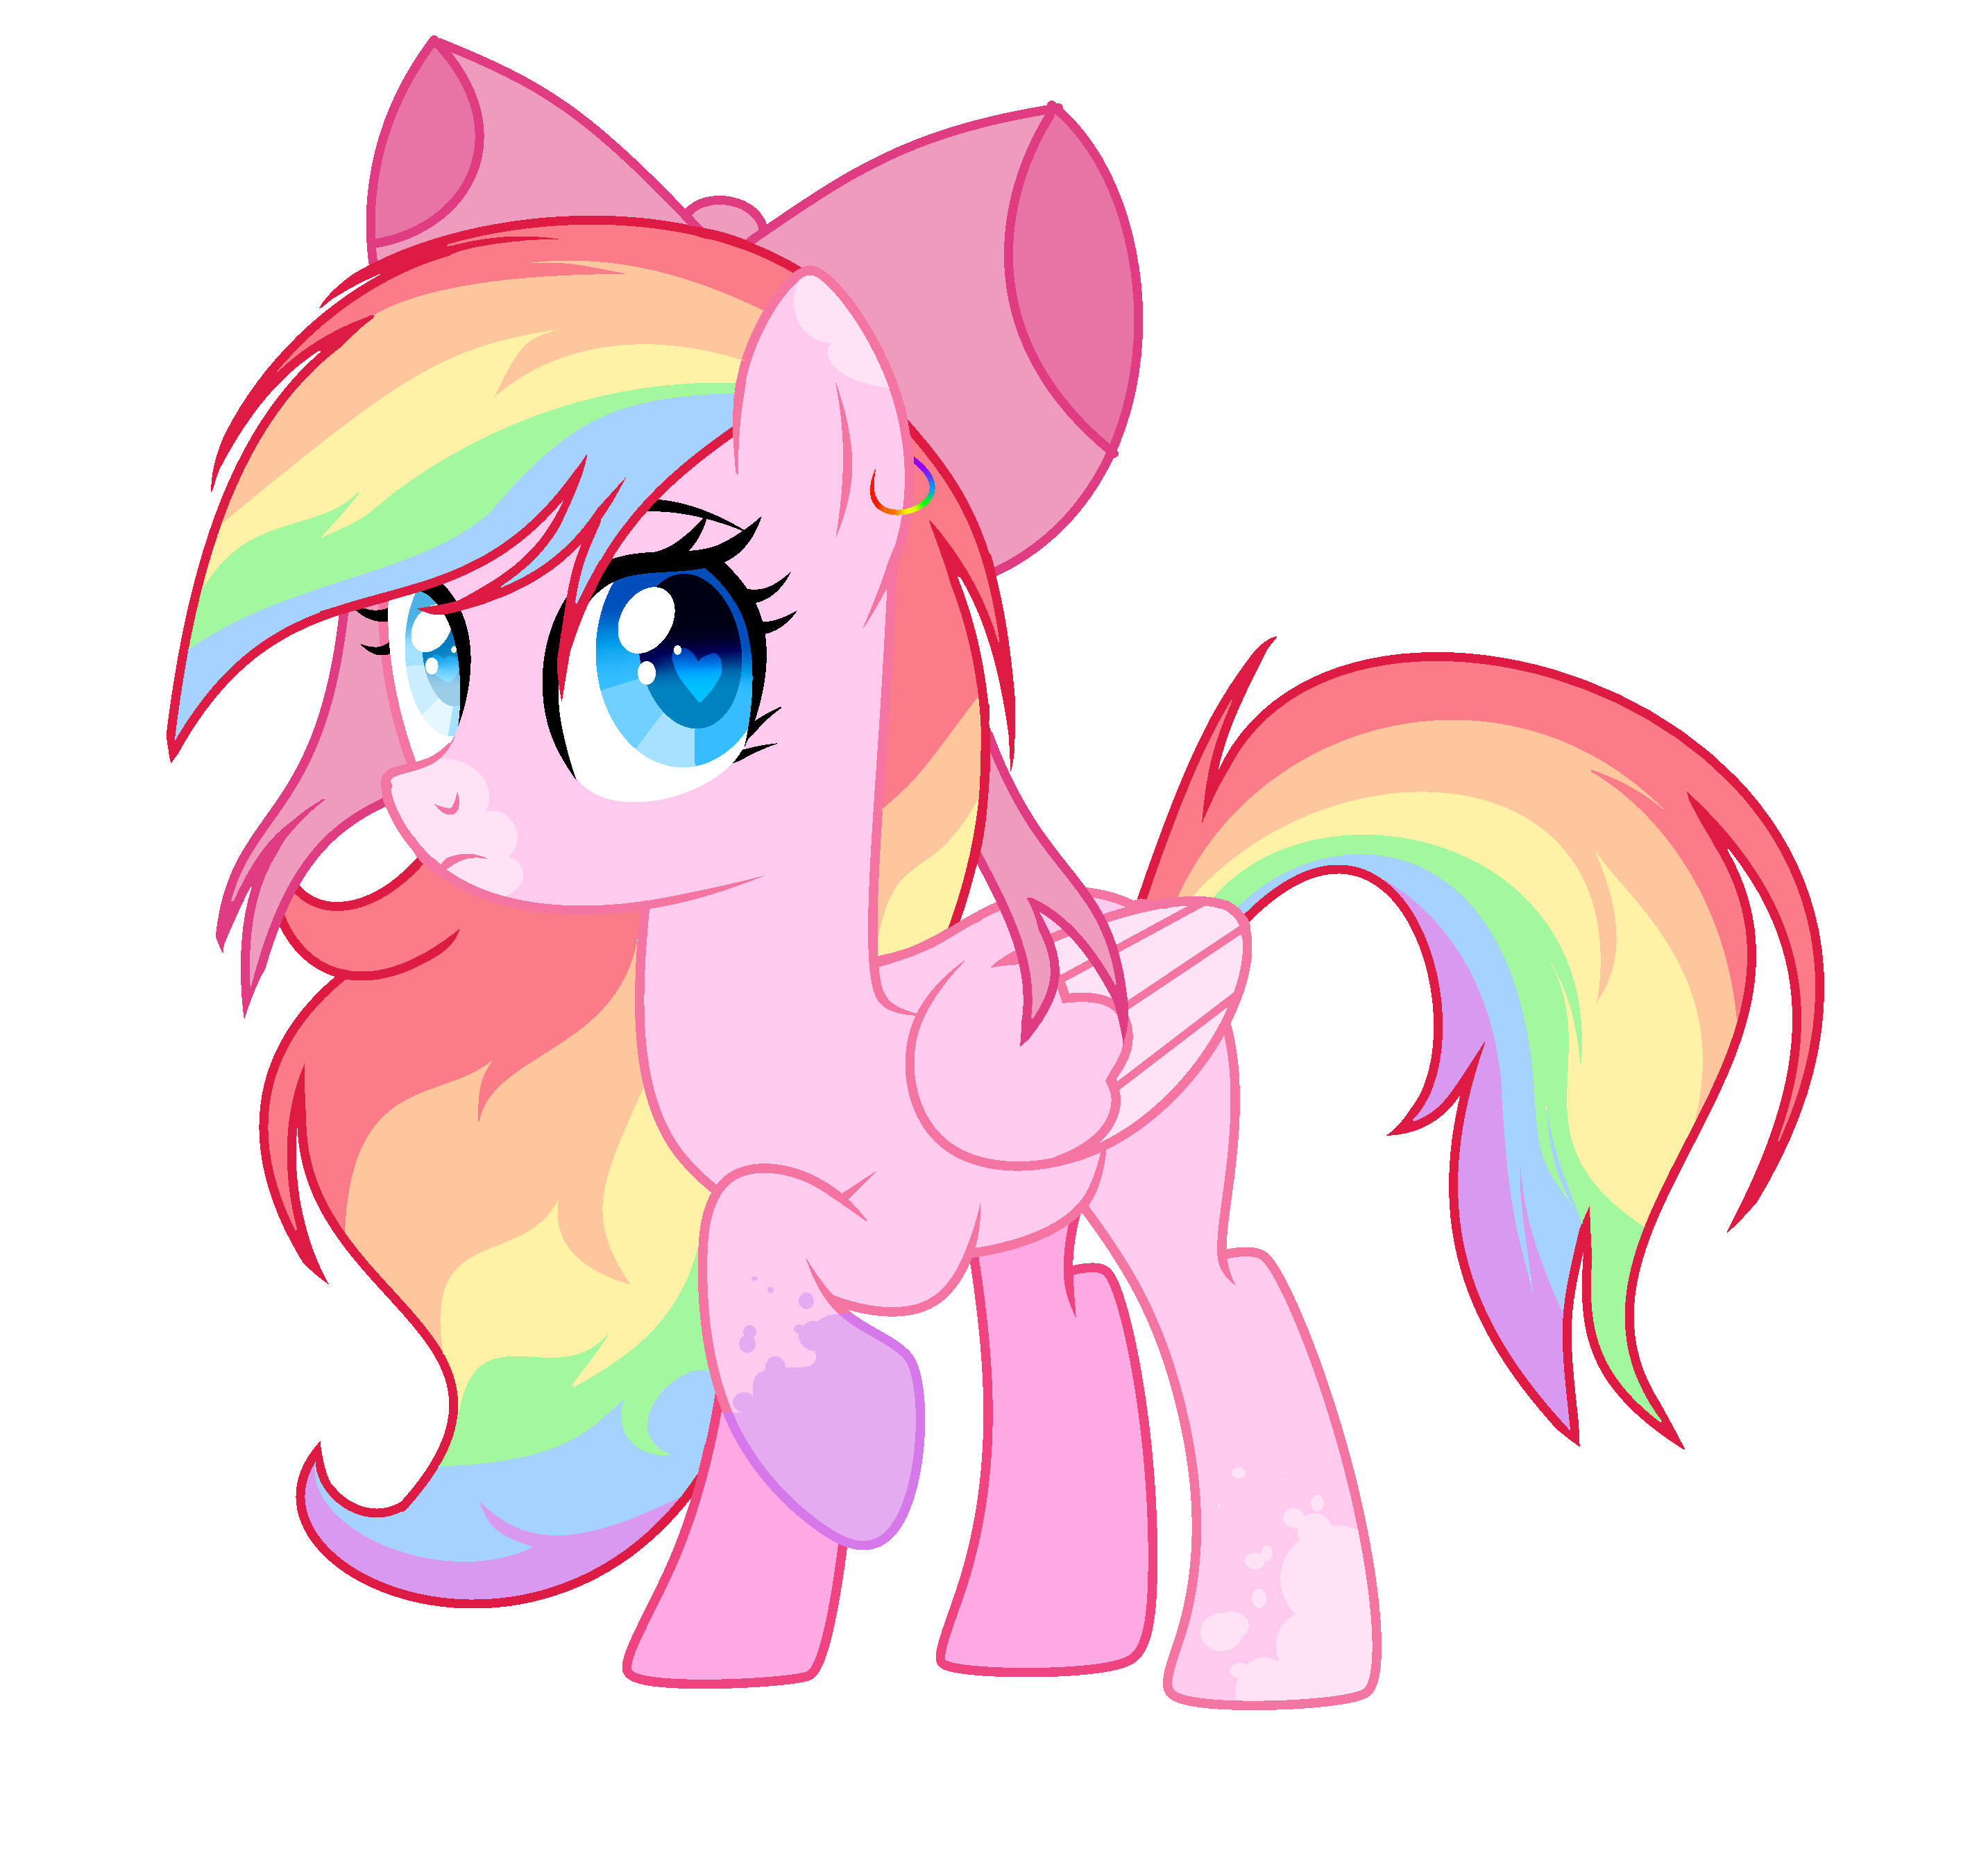 Pony wiki. Rainbow Vika. Rainbow Vika пони. Пони Рейнбоу Вика арт. Рейнбоу Пауэр.